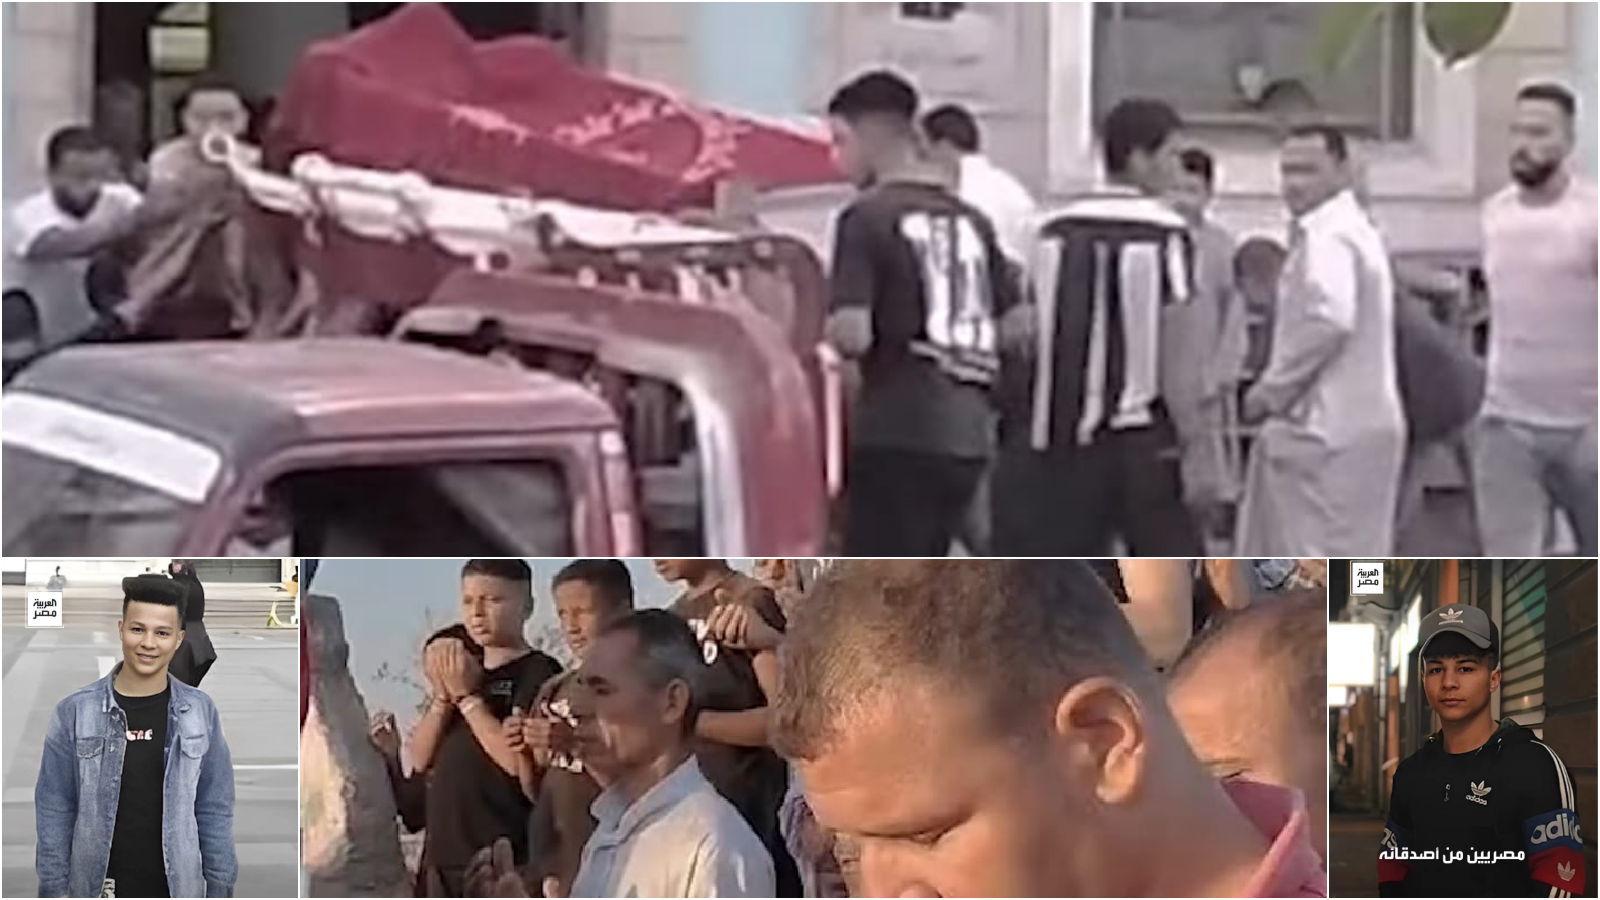  Barbiere decapitato: le immagini del funerale in Egitto, fra rabbia e dolore